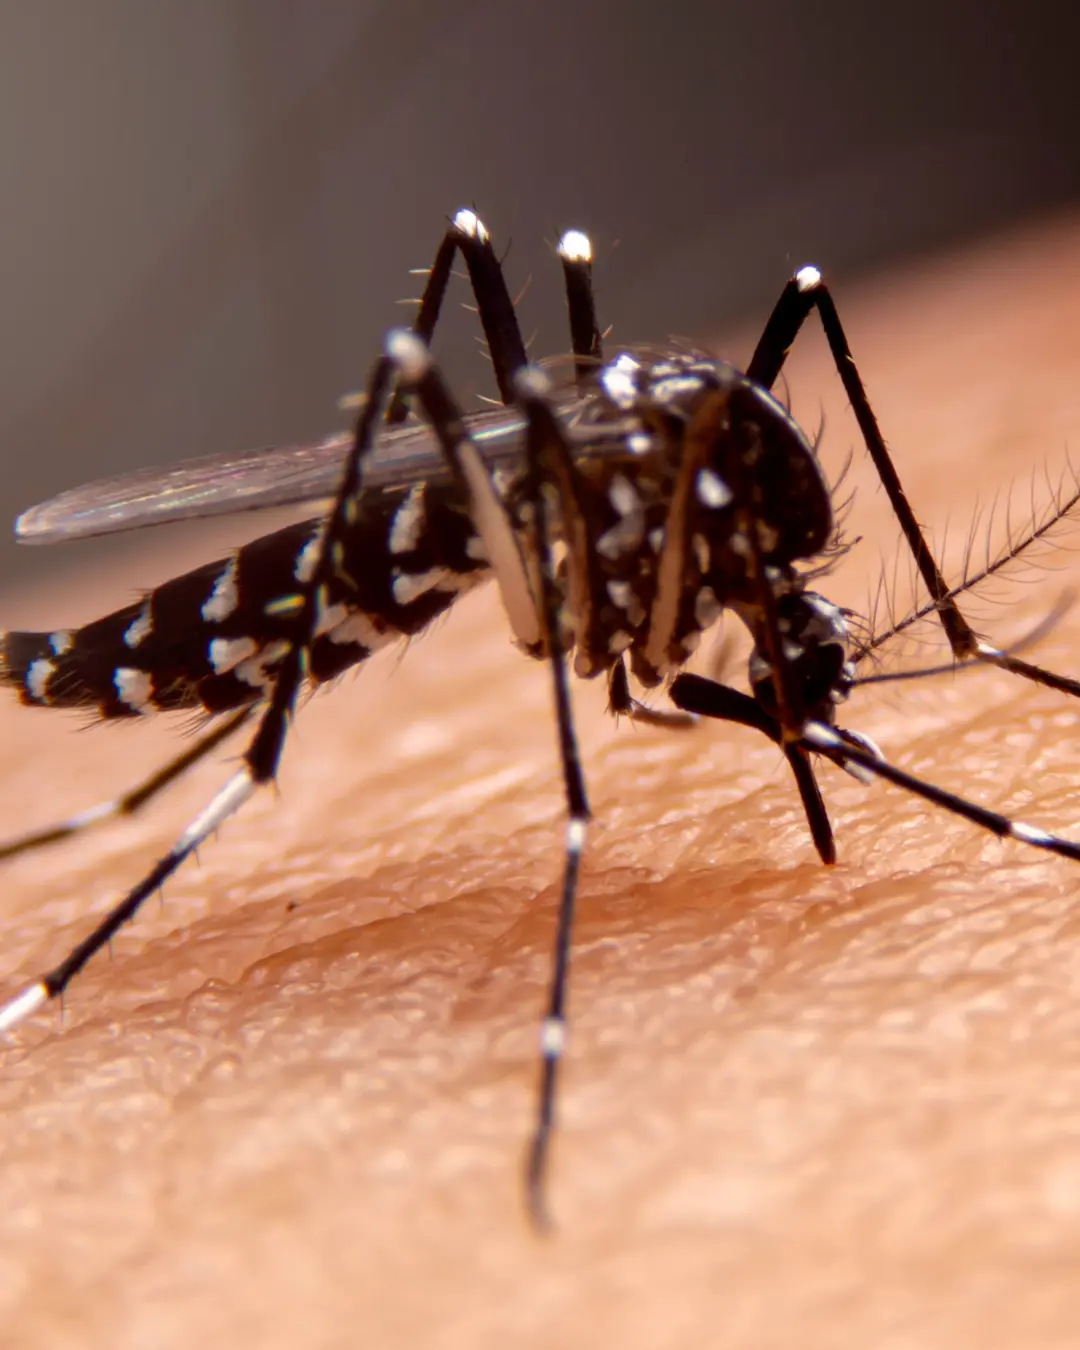 Imagem de destaque - Paraná registra 26 novas mortes por dengue; total de óbitos ultrapassa 100 em um ano